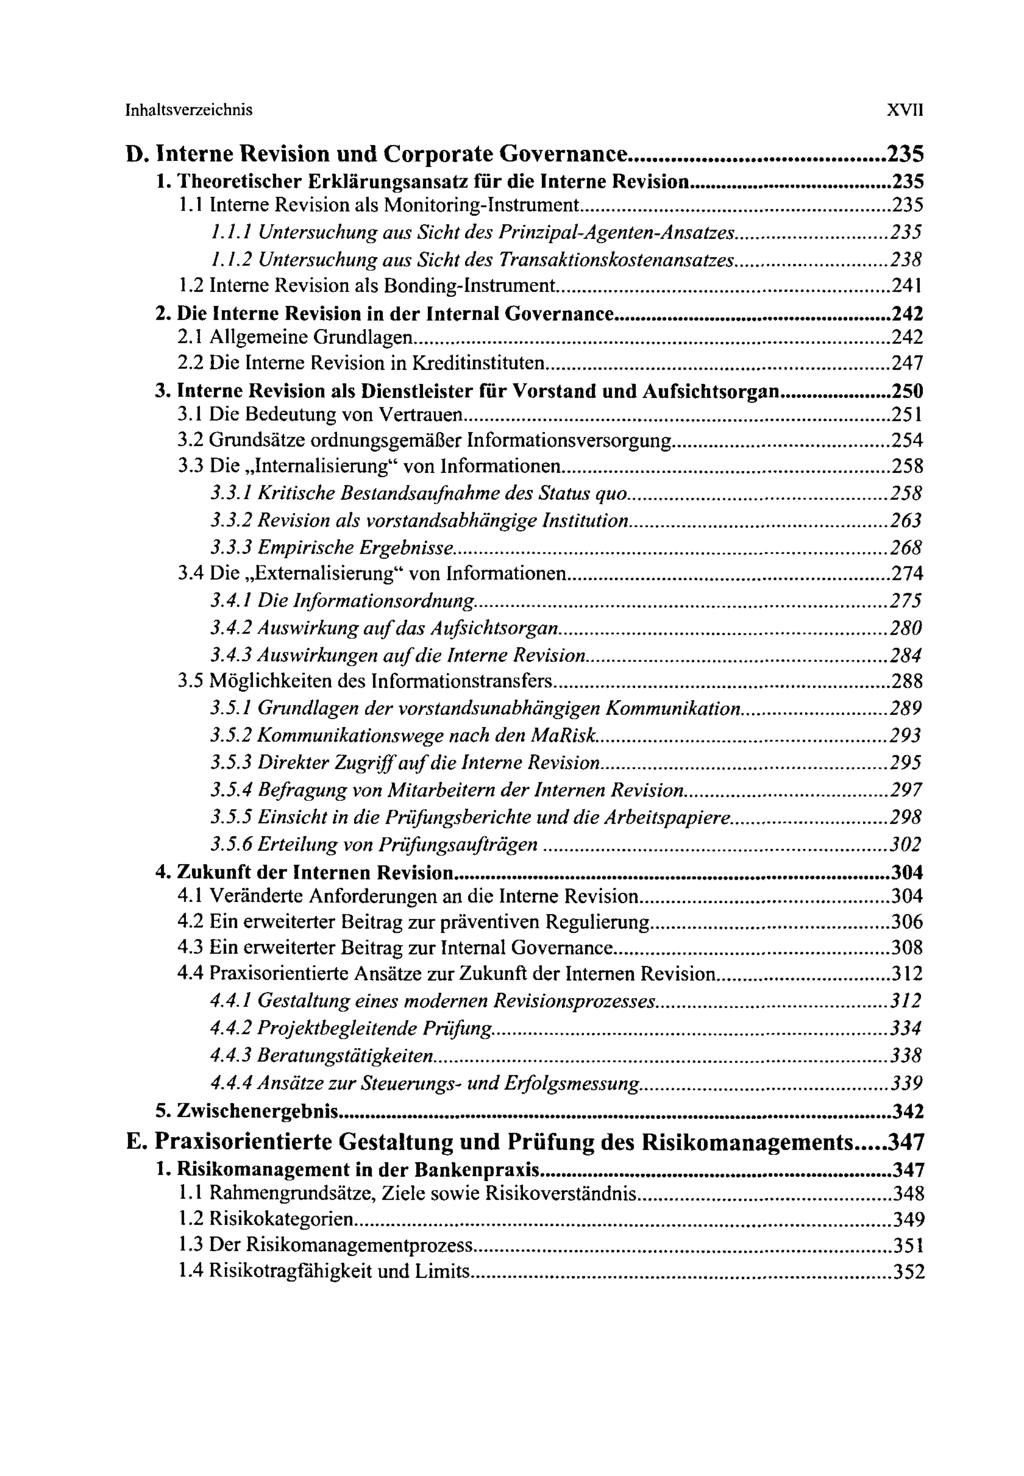 Inhaltsverzeichnis D. Interne Revision und Corporate Governance 235 1. Theoretischer Erklärungsansatz für die Interne Revision 235 1.1 Interne Revision als Monitoring-Instrument 235 /.